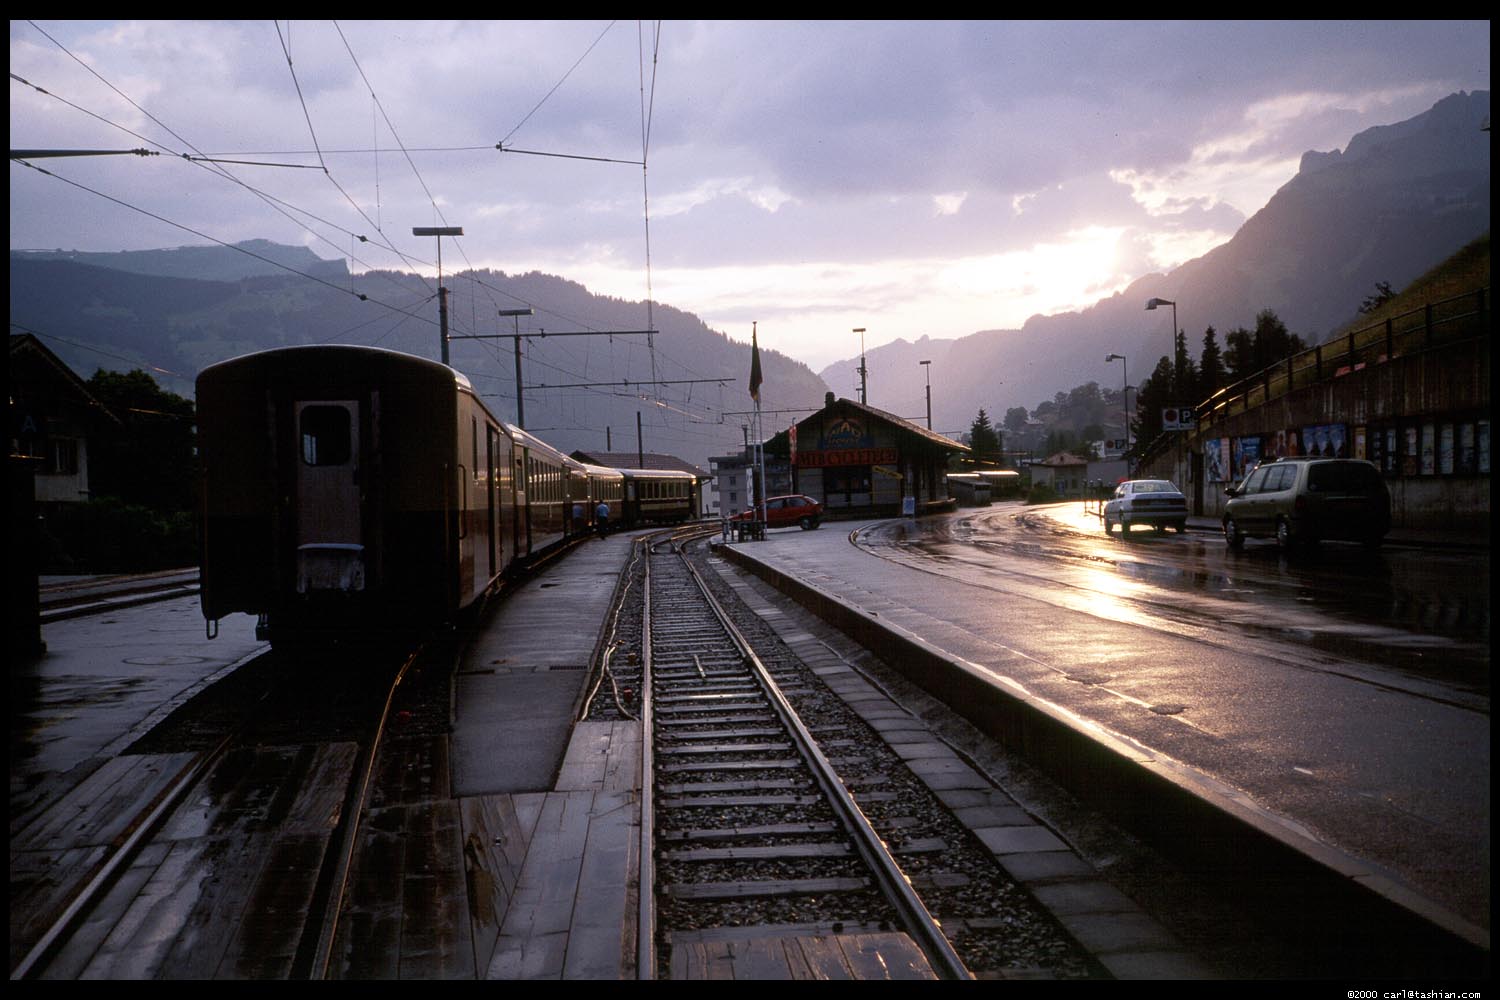 Train Station Grindelwald, Switzerland June 2000